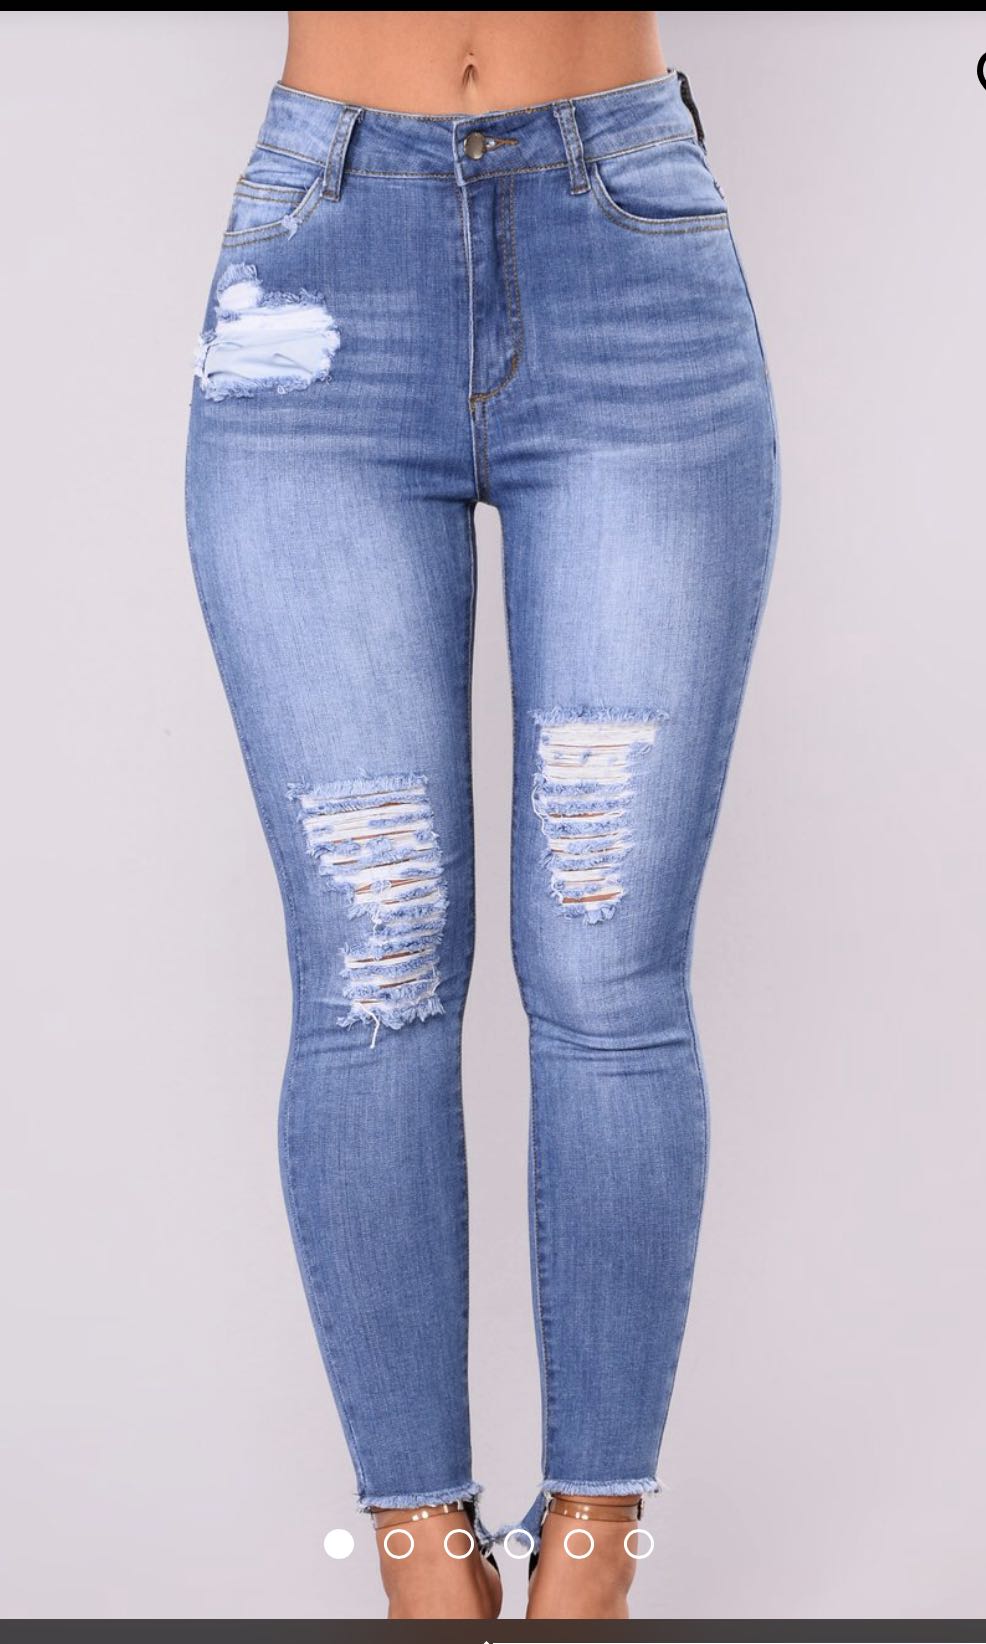 fashion nova jeans size